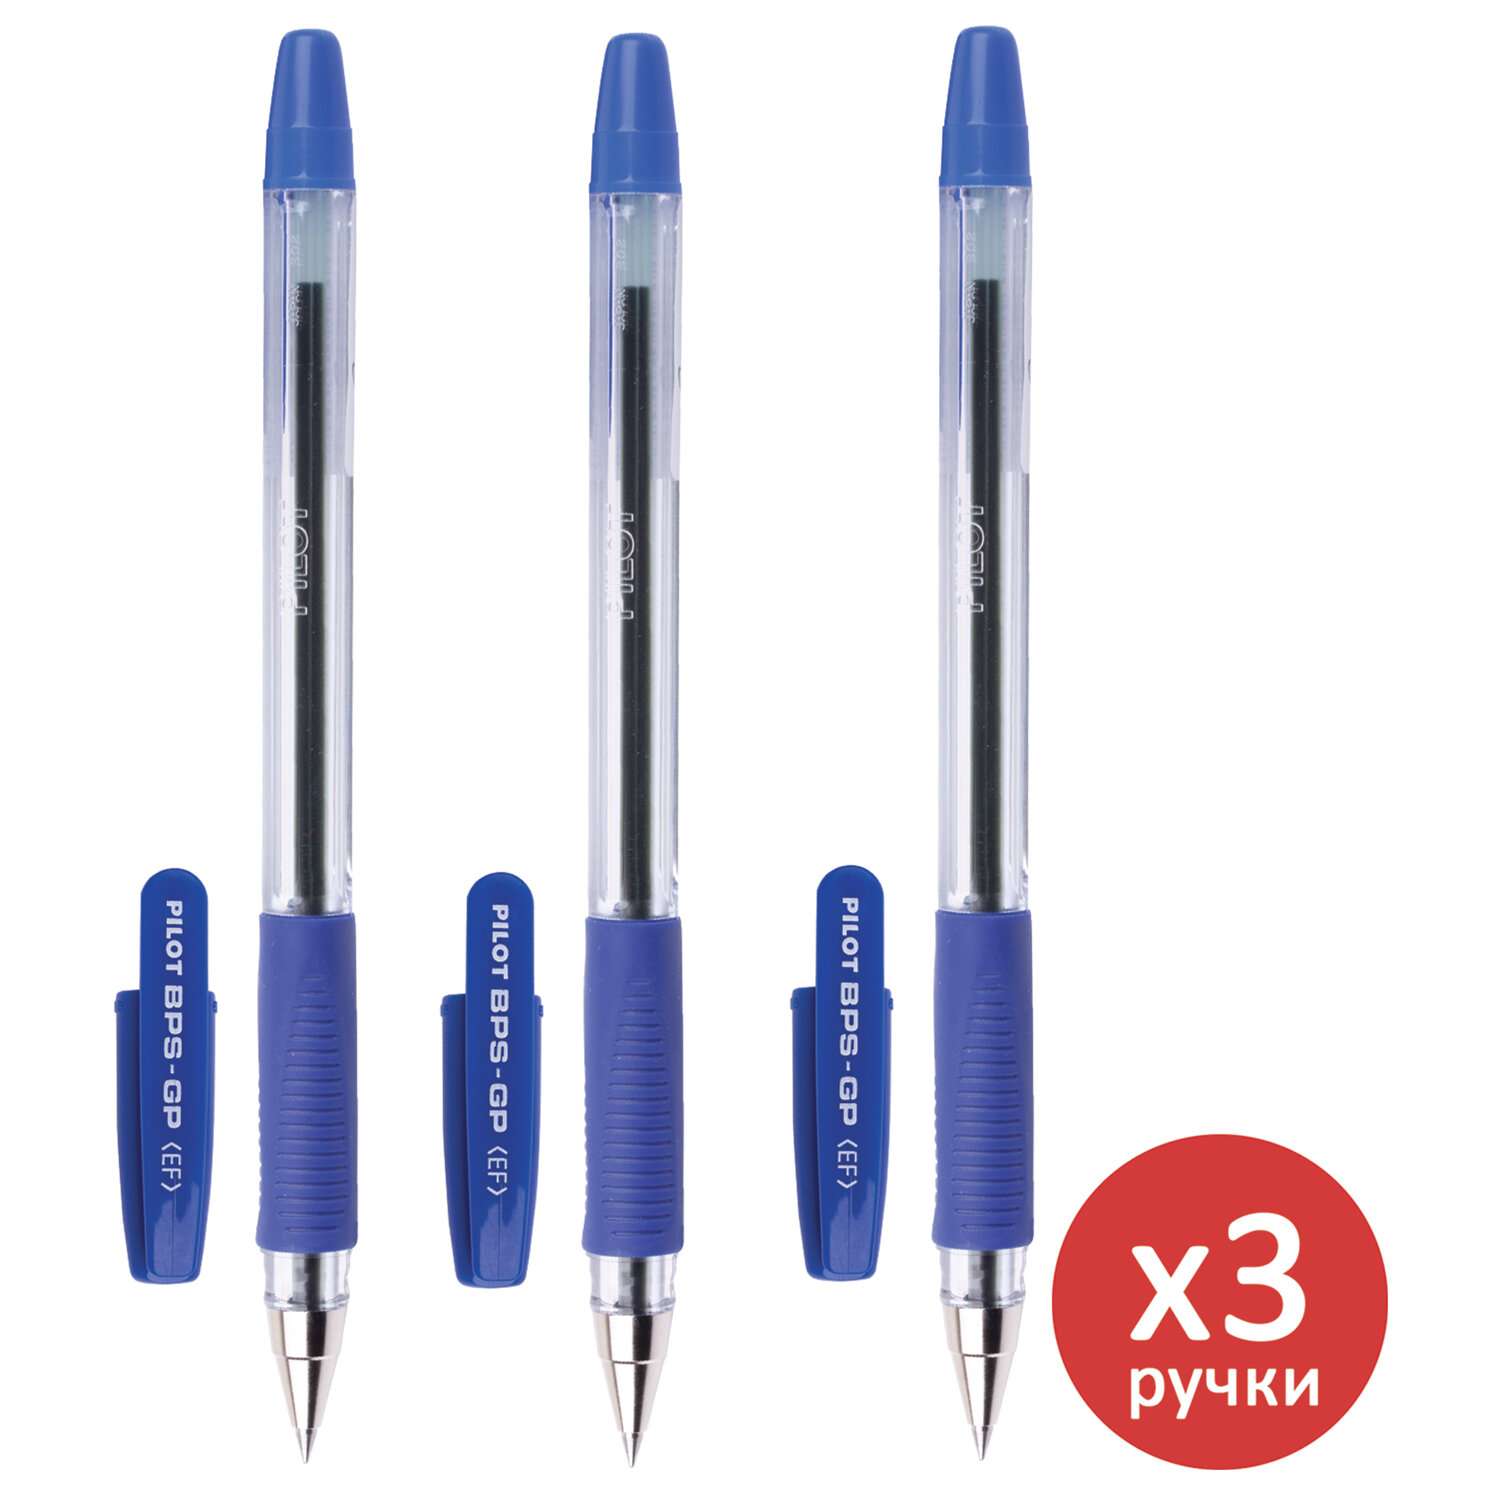 Ручки шариковые PILOT масляные синие набор 3 штуки - фото 1